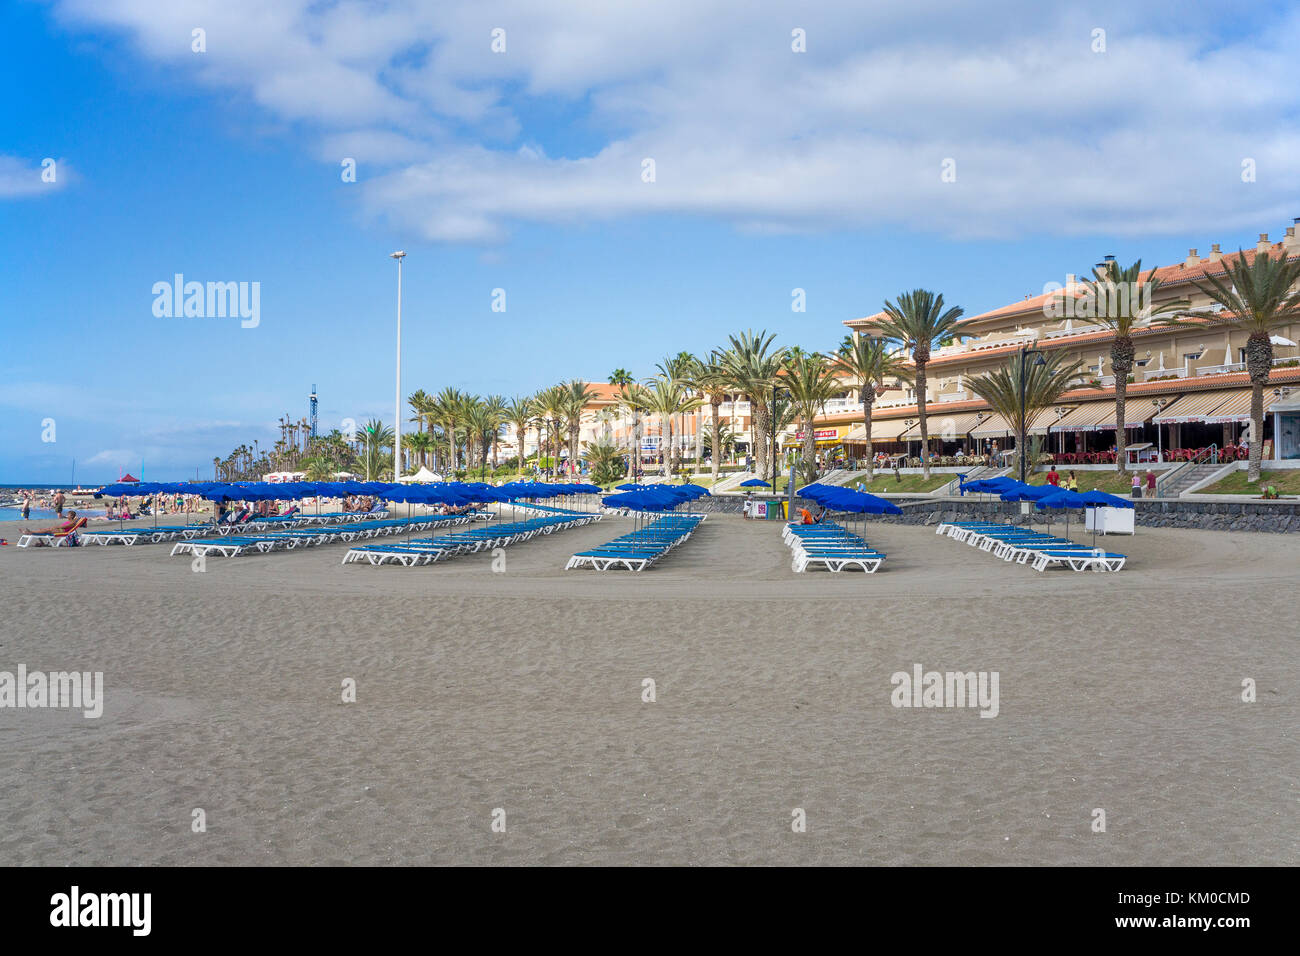 Chaises longues et parasols à la plage, Los Christianos, l'île de Tenerife, Canaries, Espagne Banque D'Images